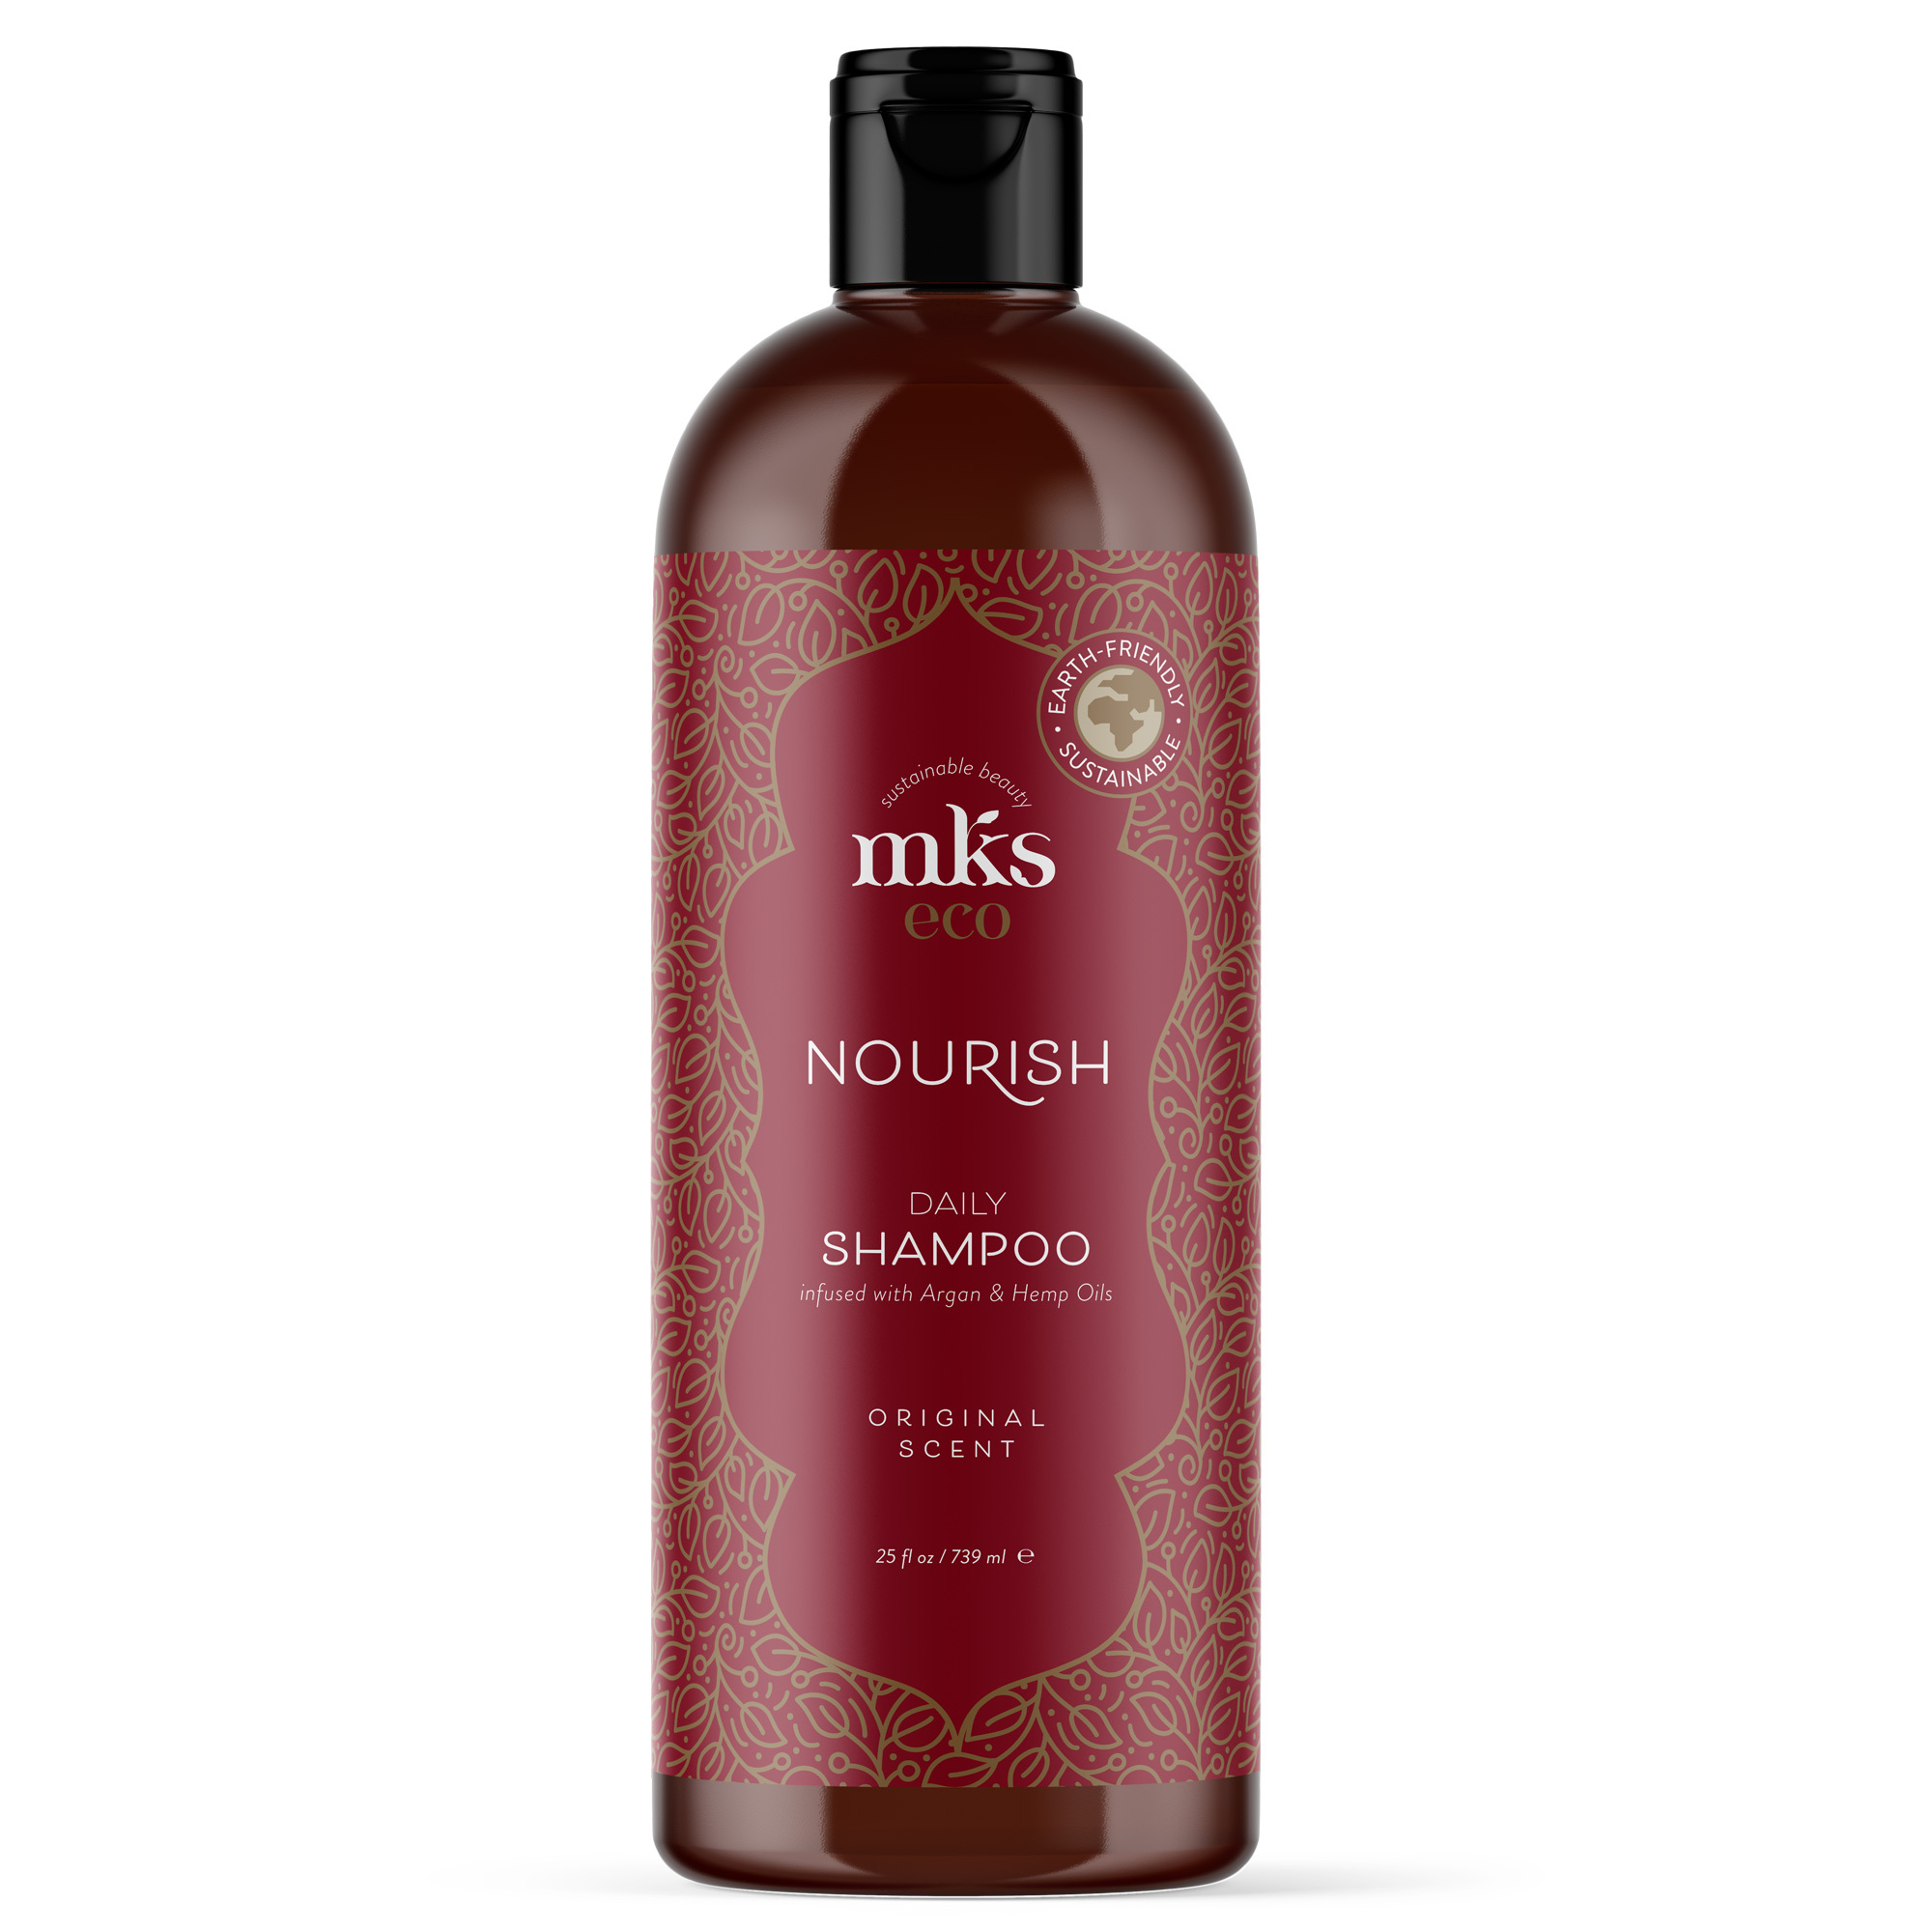 MKS eco mks ECO Shampoo - Original Scent